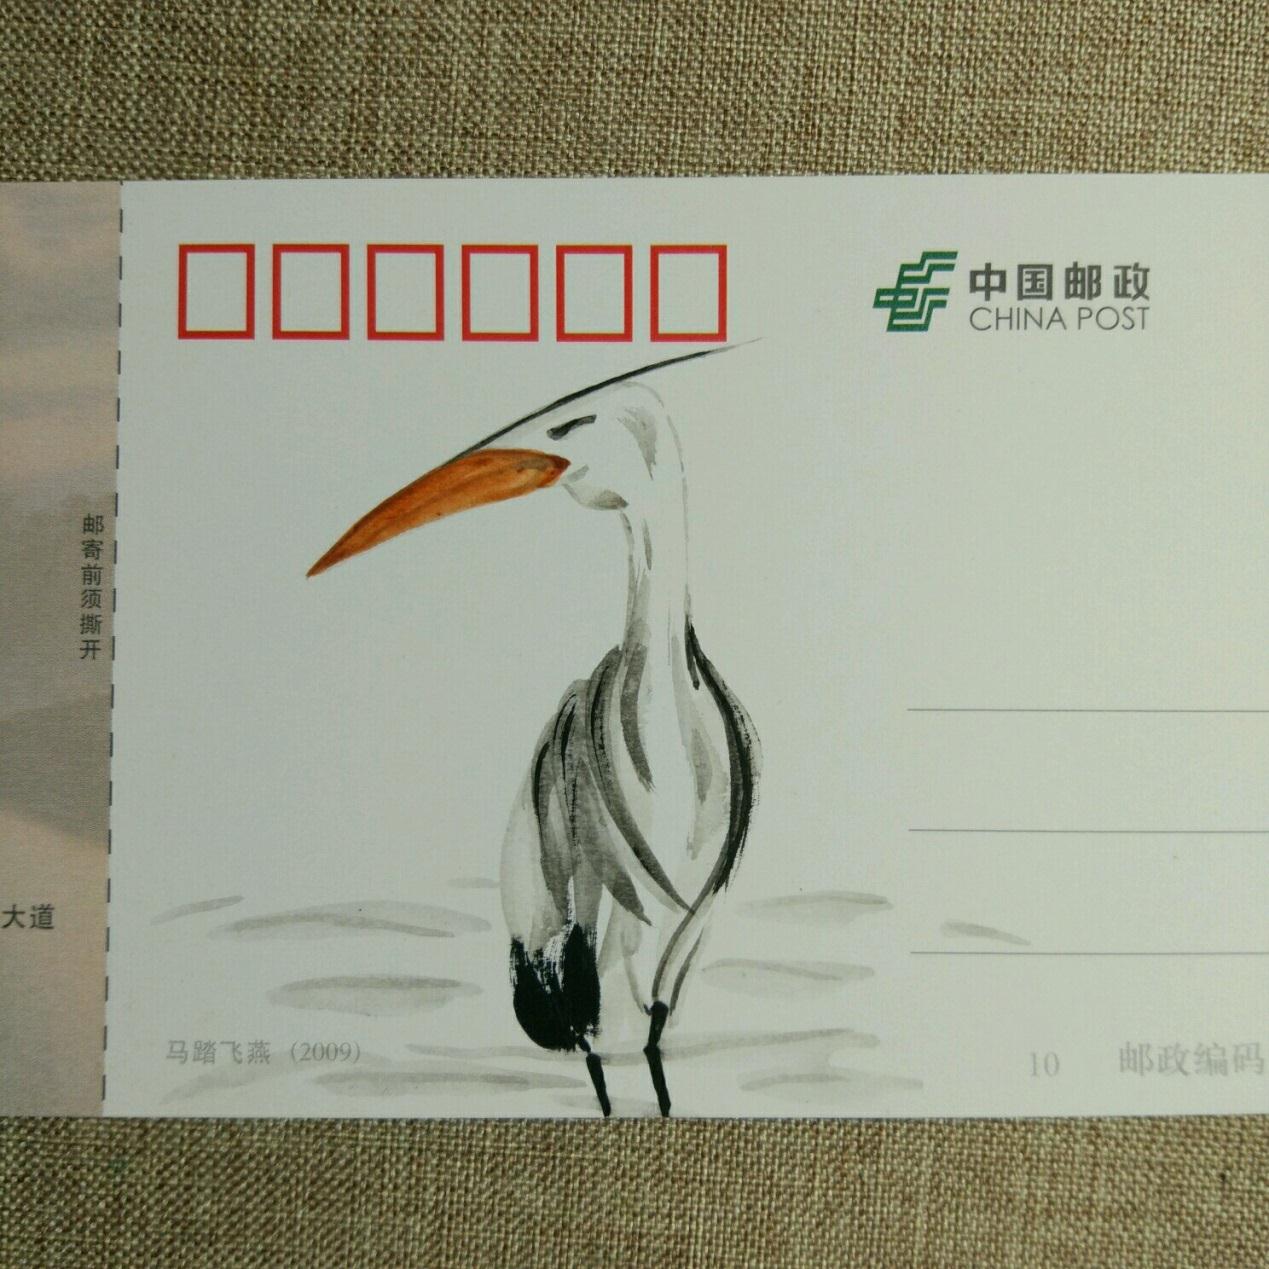 超级有创意的动物手绘明信片作品―可爱的小鸟